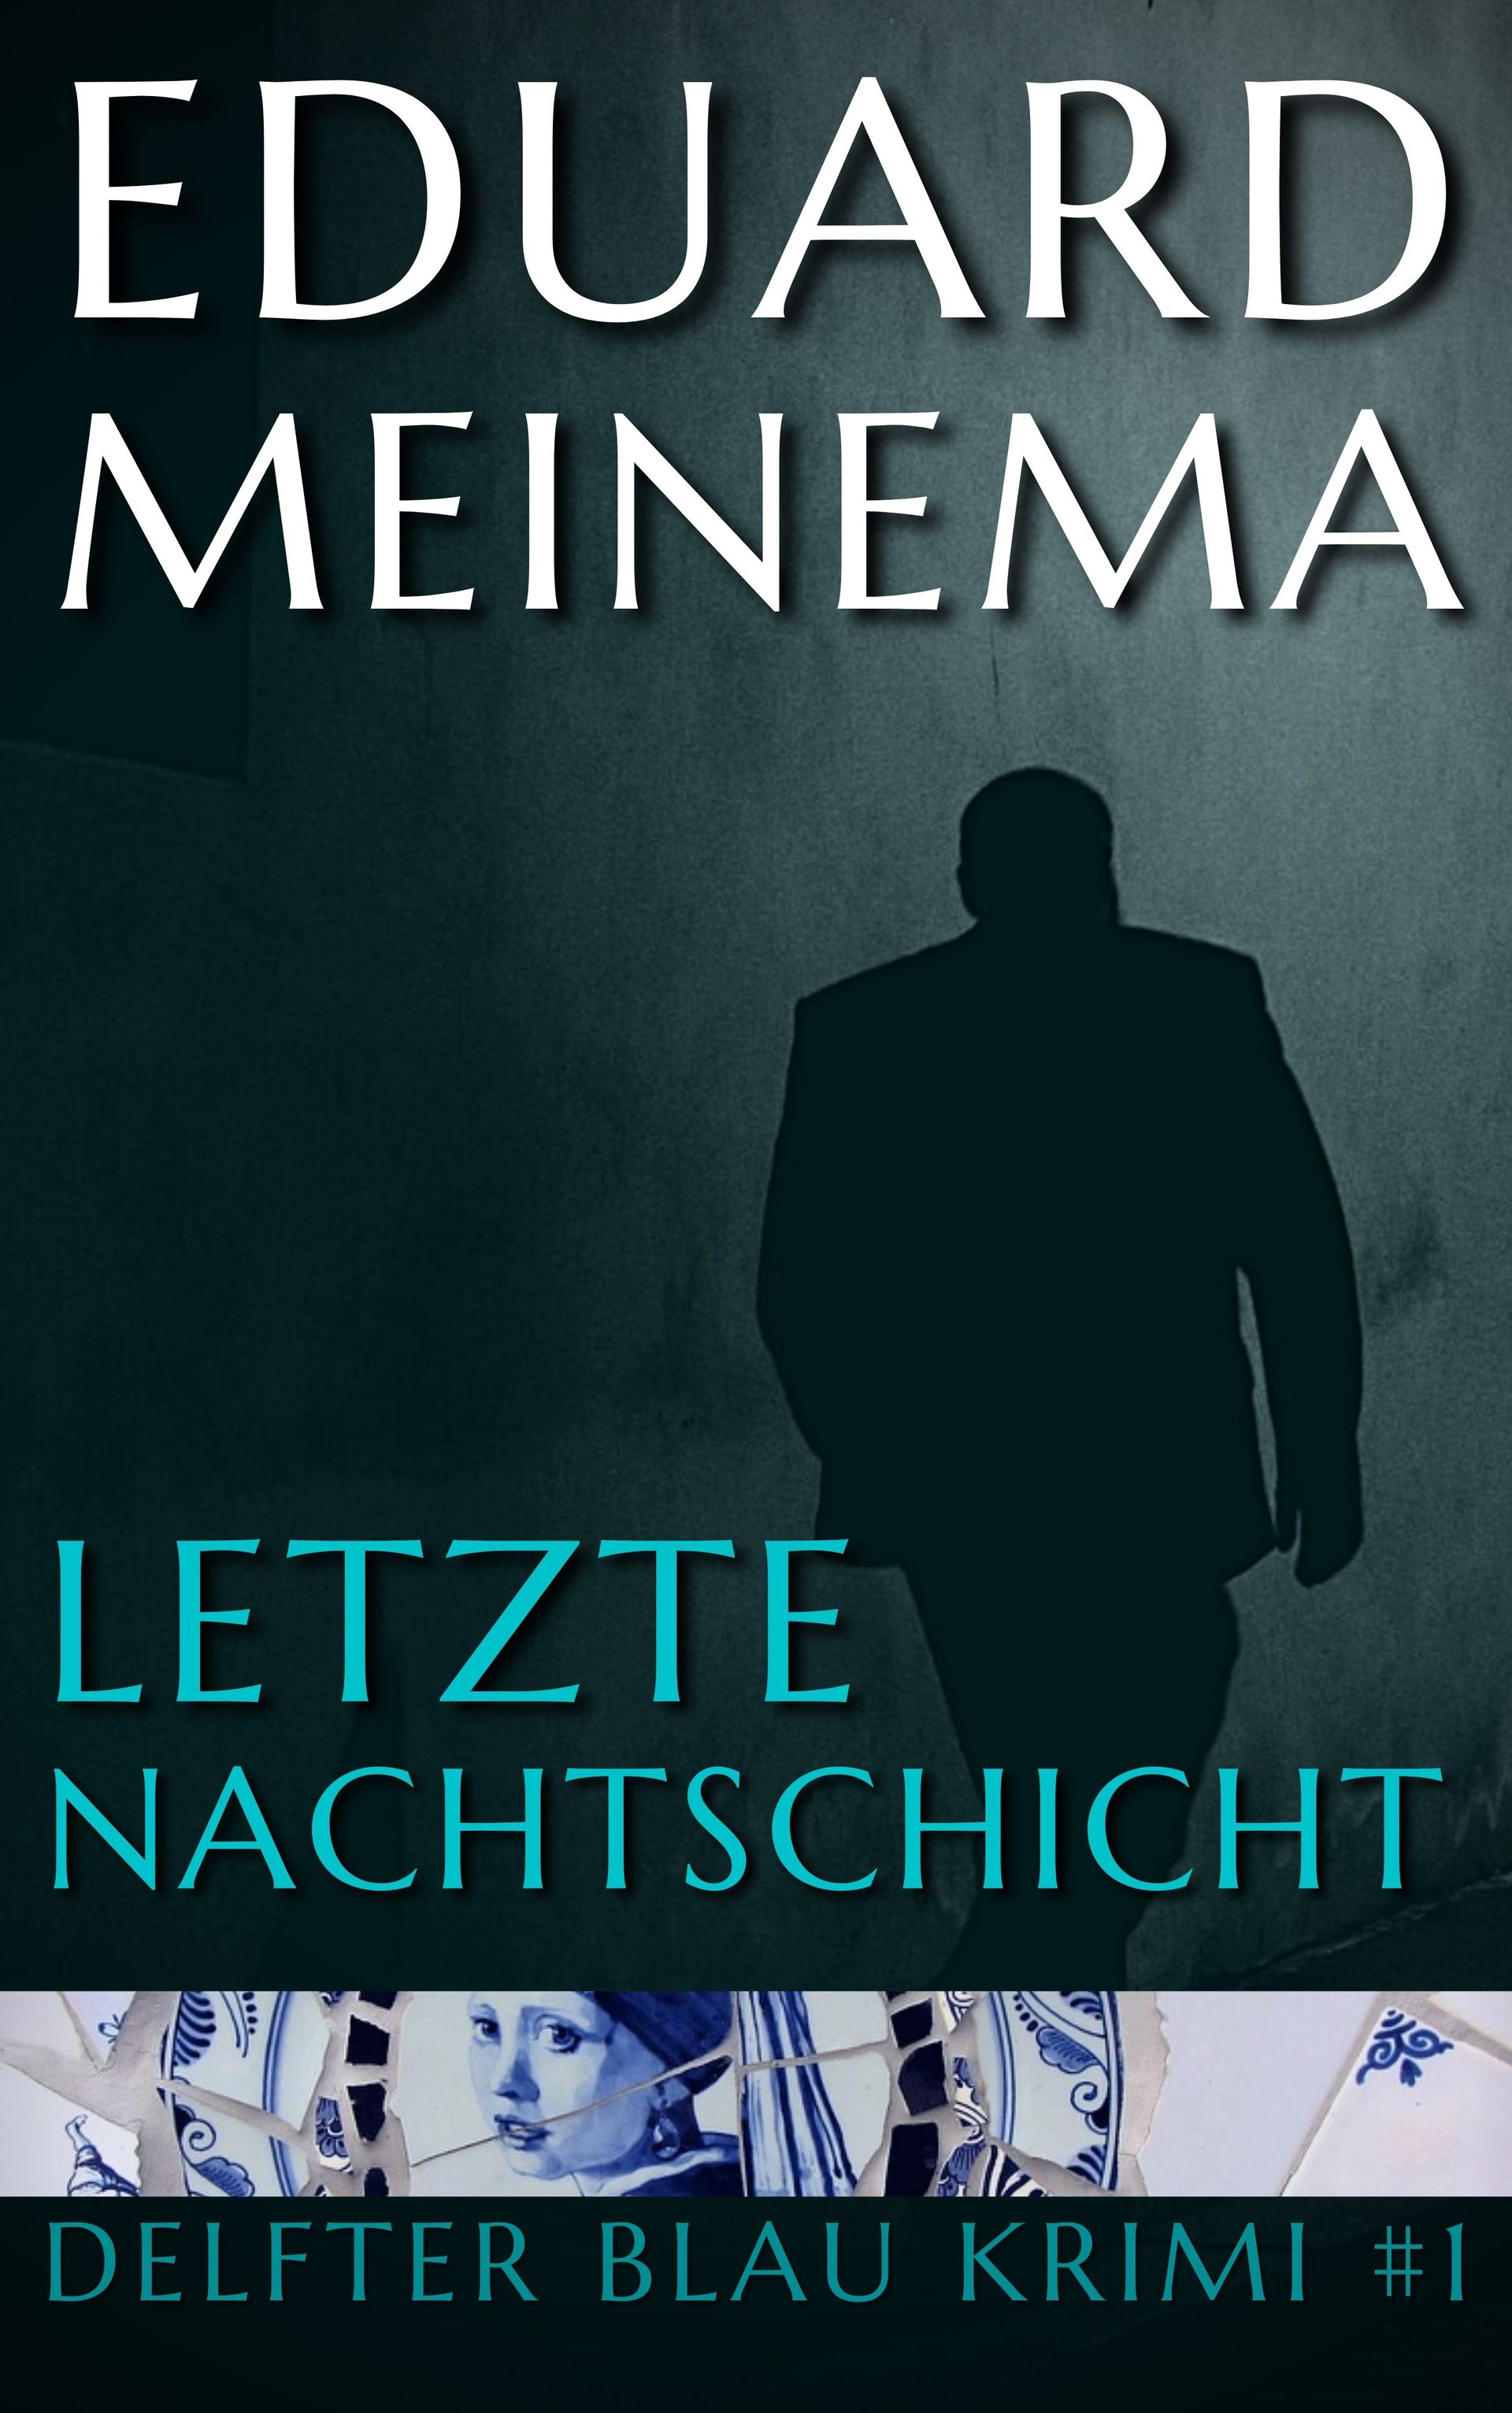 Delfter Blau Krimi #1 Letzte Nachtschicht von Eduard Meinema. Jetzt kaufen, ebook direct vom Autor.